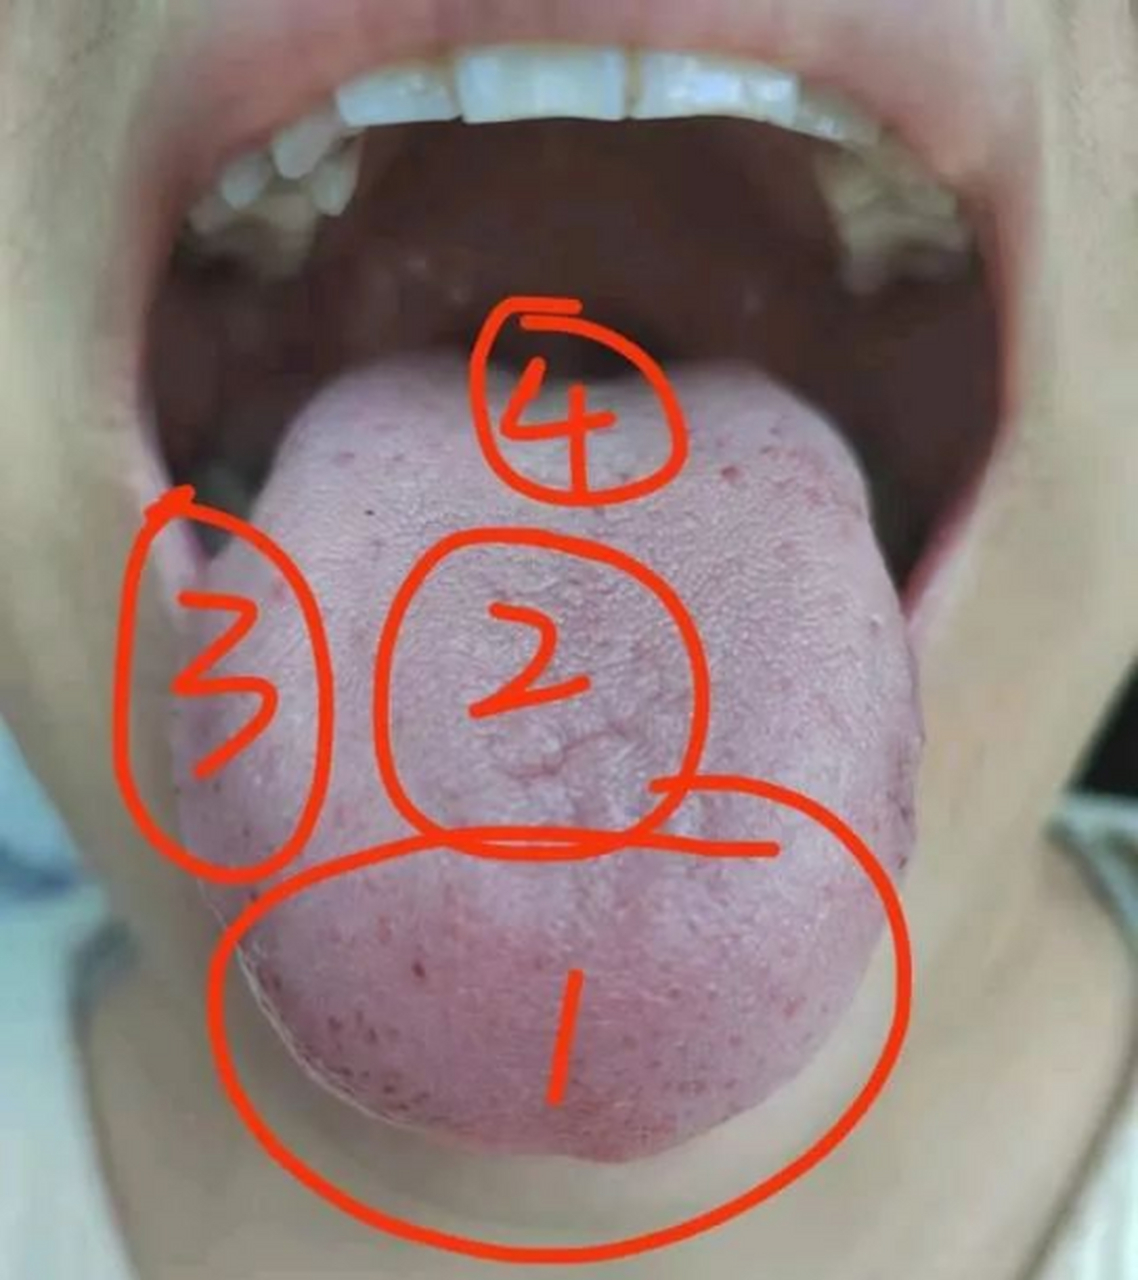 舌像分析:头昏沉  这个舌像舌质比较白微紫,舌苔微厚,舌中凹陷线舌前